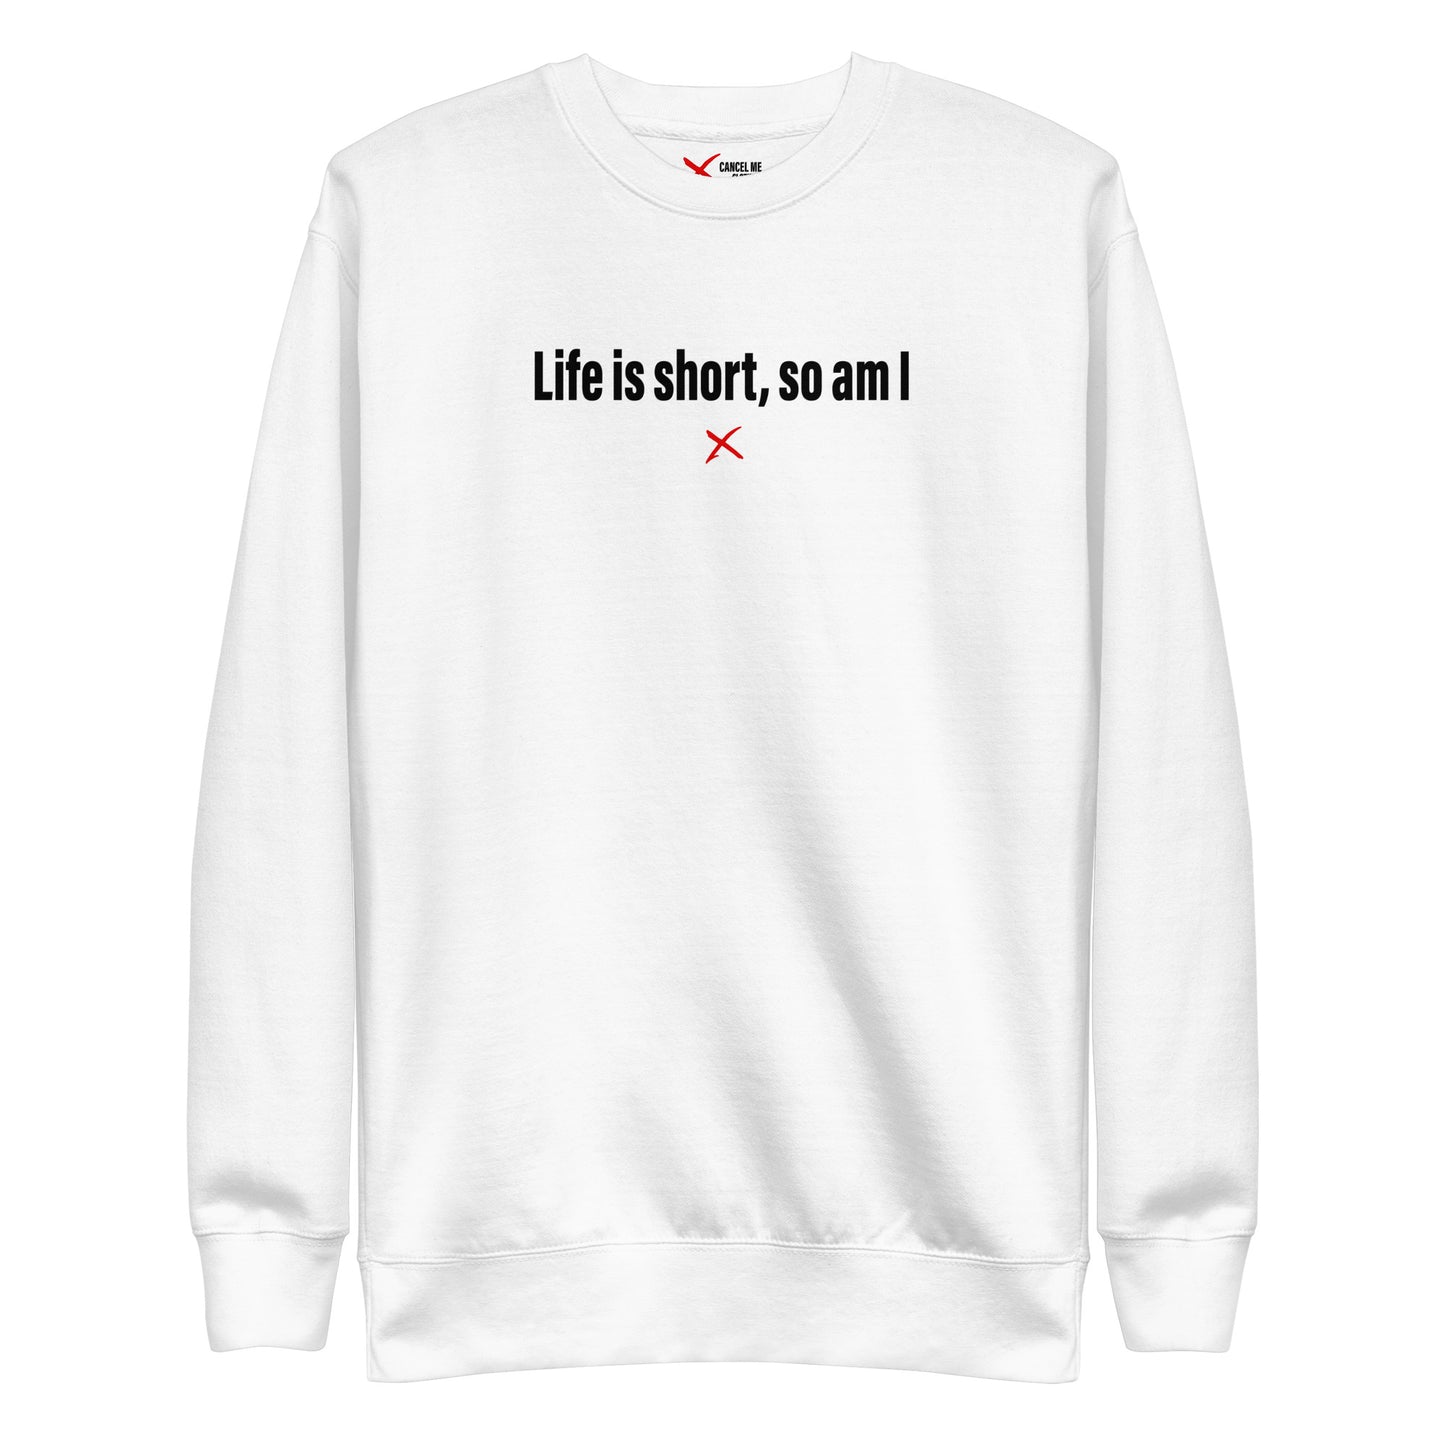 Life is short, so am I - Sweatshirt